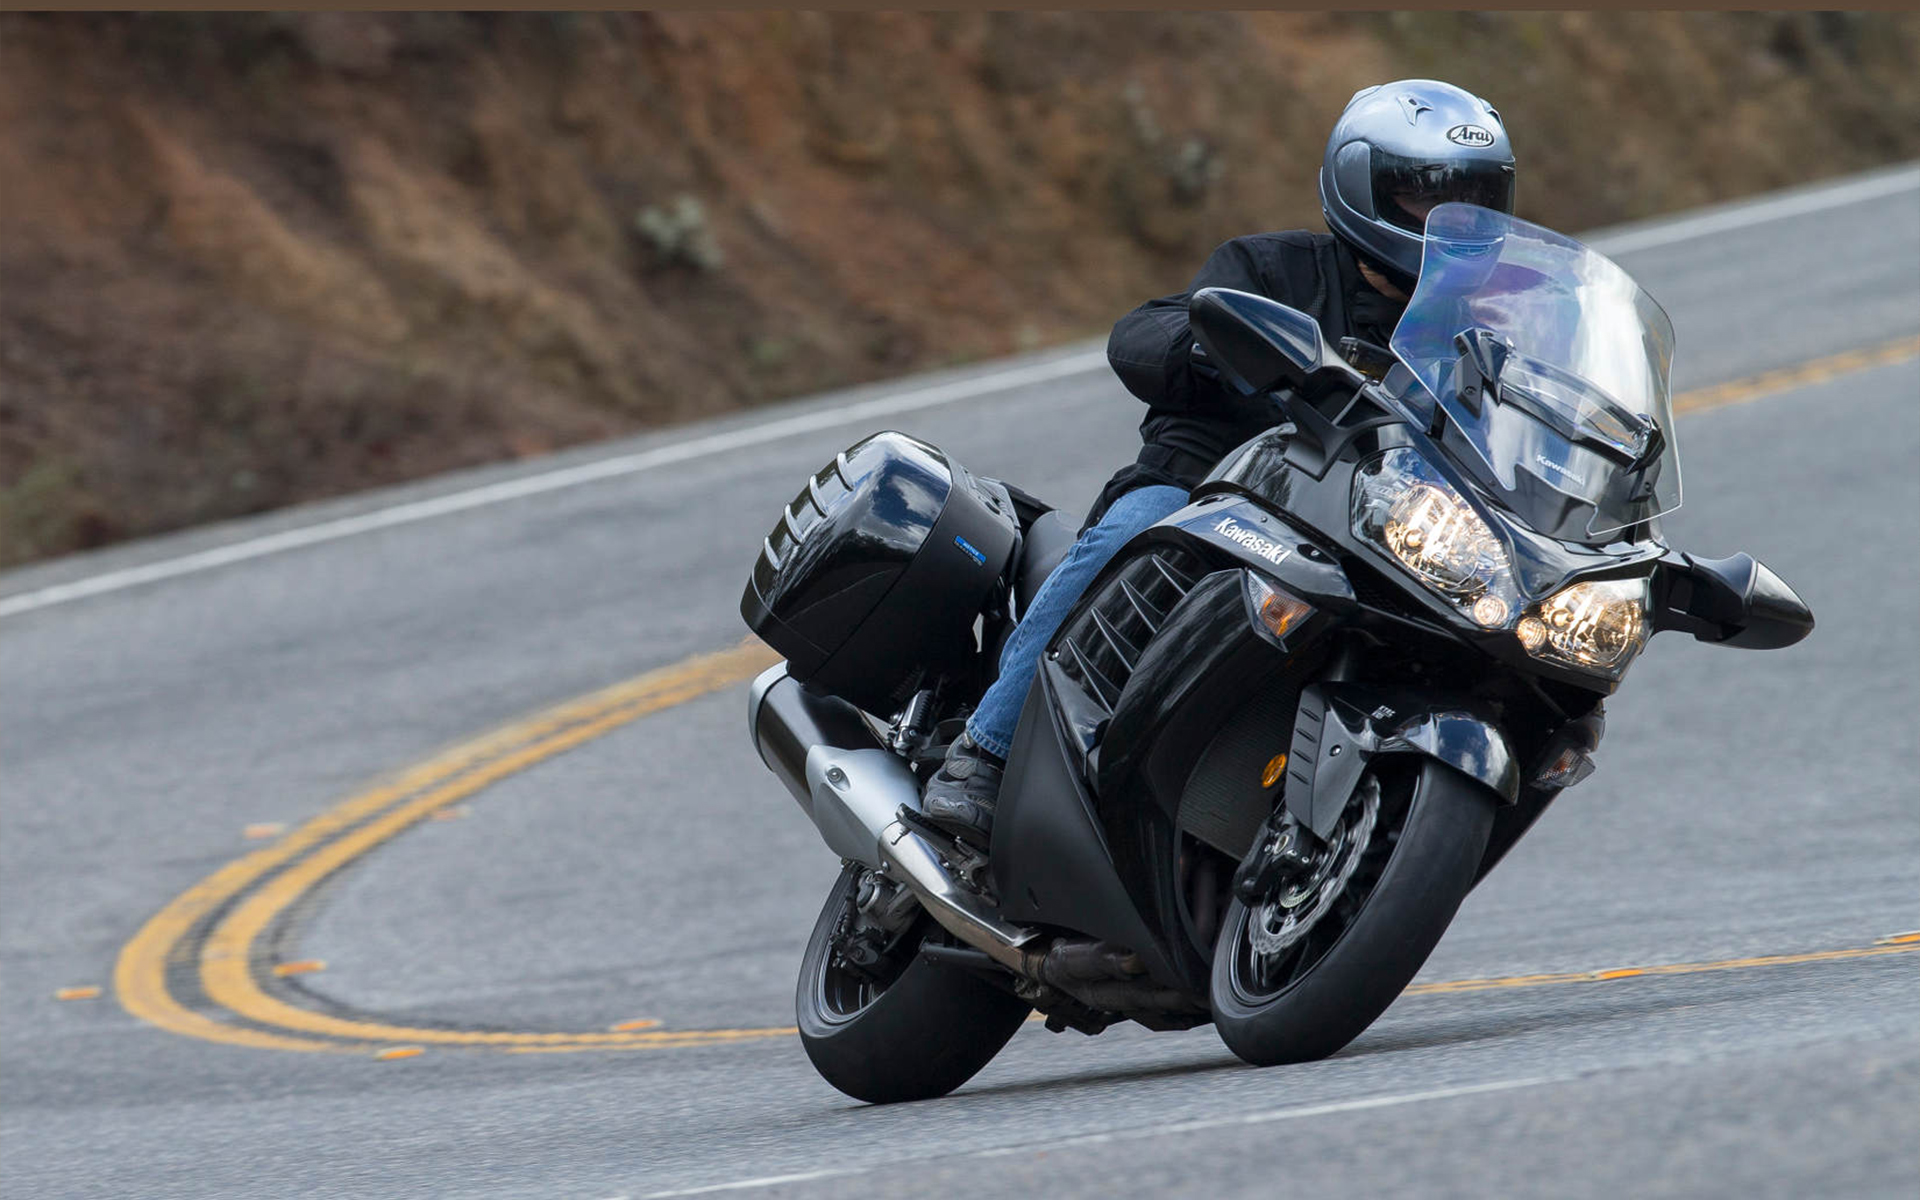 Yamaha fjr 1300 - преимущества мотоцикла и технические характеристики